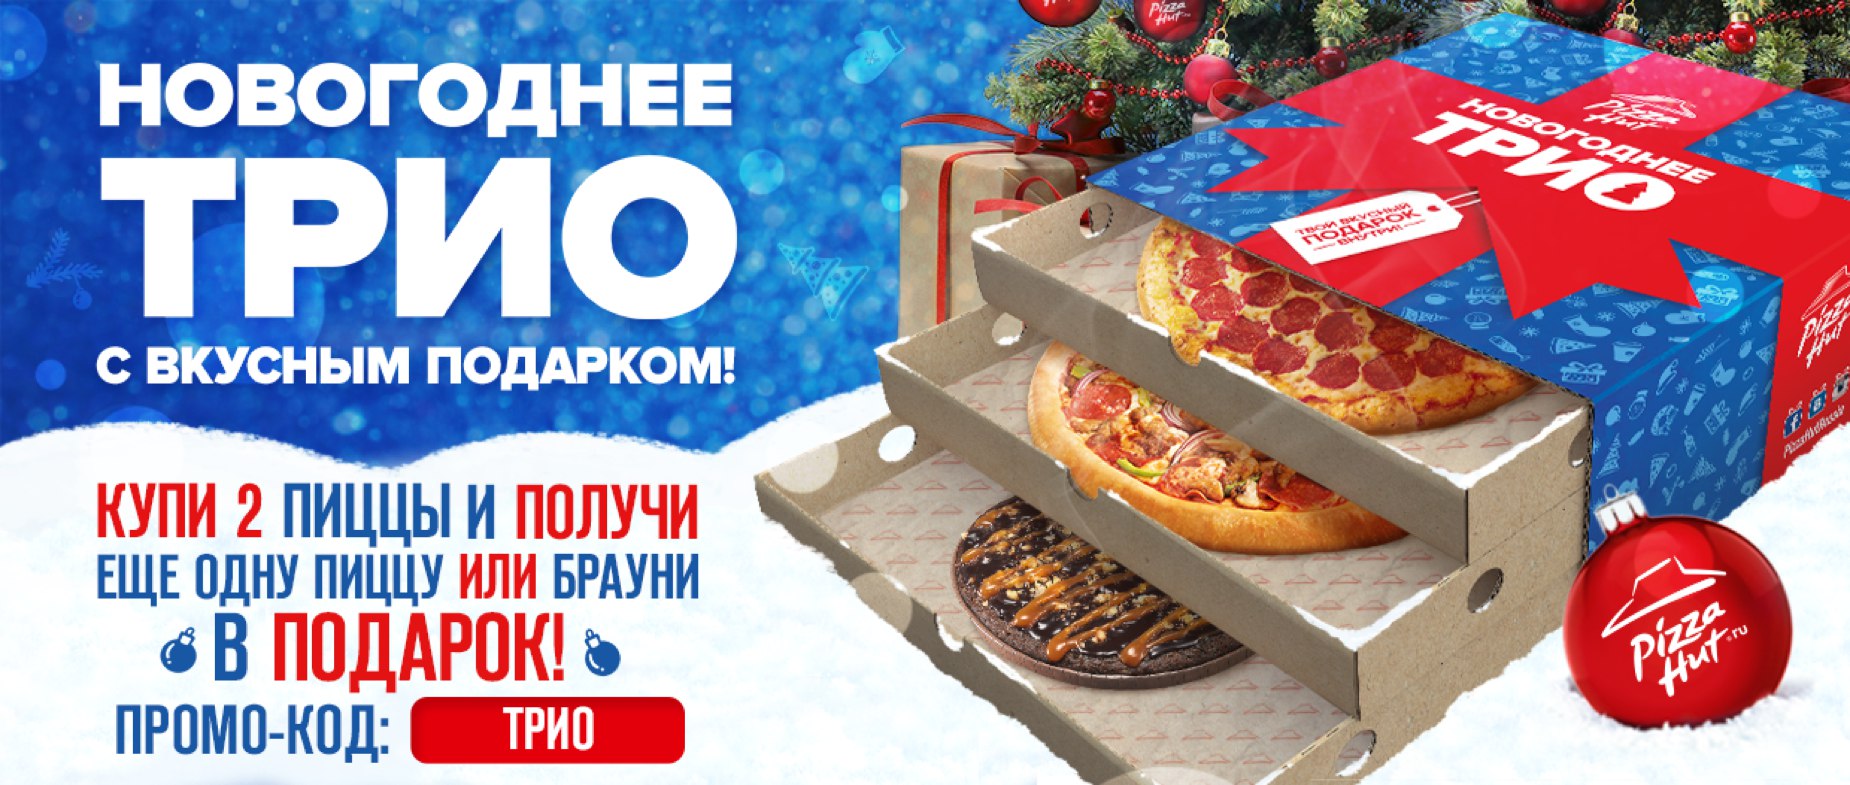 Трио пицца доставка. Новогоднее трио. Пиццерия подарок новогодний. Акция пицца в подарок. Пицца хат Ижевск.